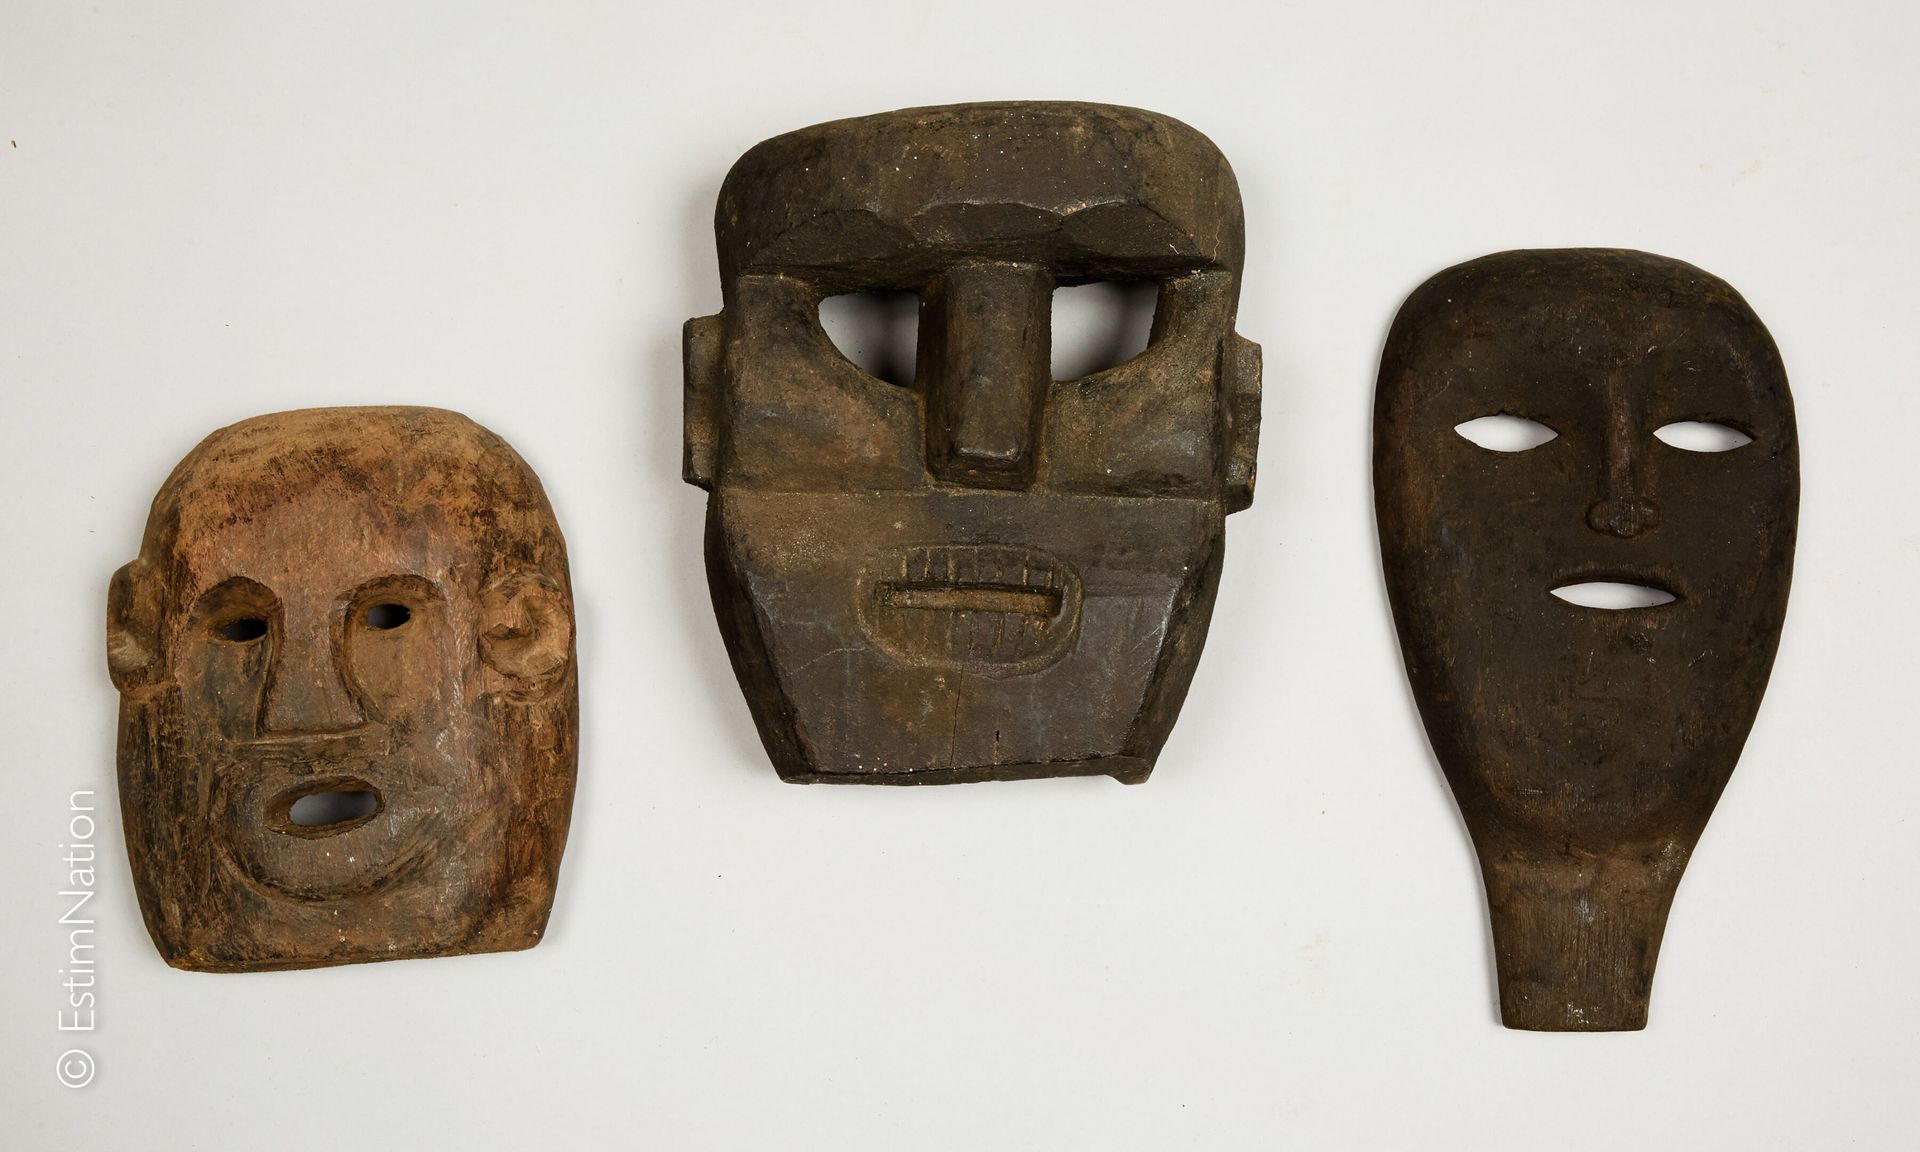 TIMOR 钛合金



带有深色铜锈的木雕面具，显示出一张有明显牙齿的风格化脸庞

高度：25厘米 - 宽度：22厘米 - 深度：12厘米



我们加入到其&hellip;